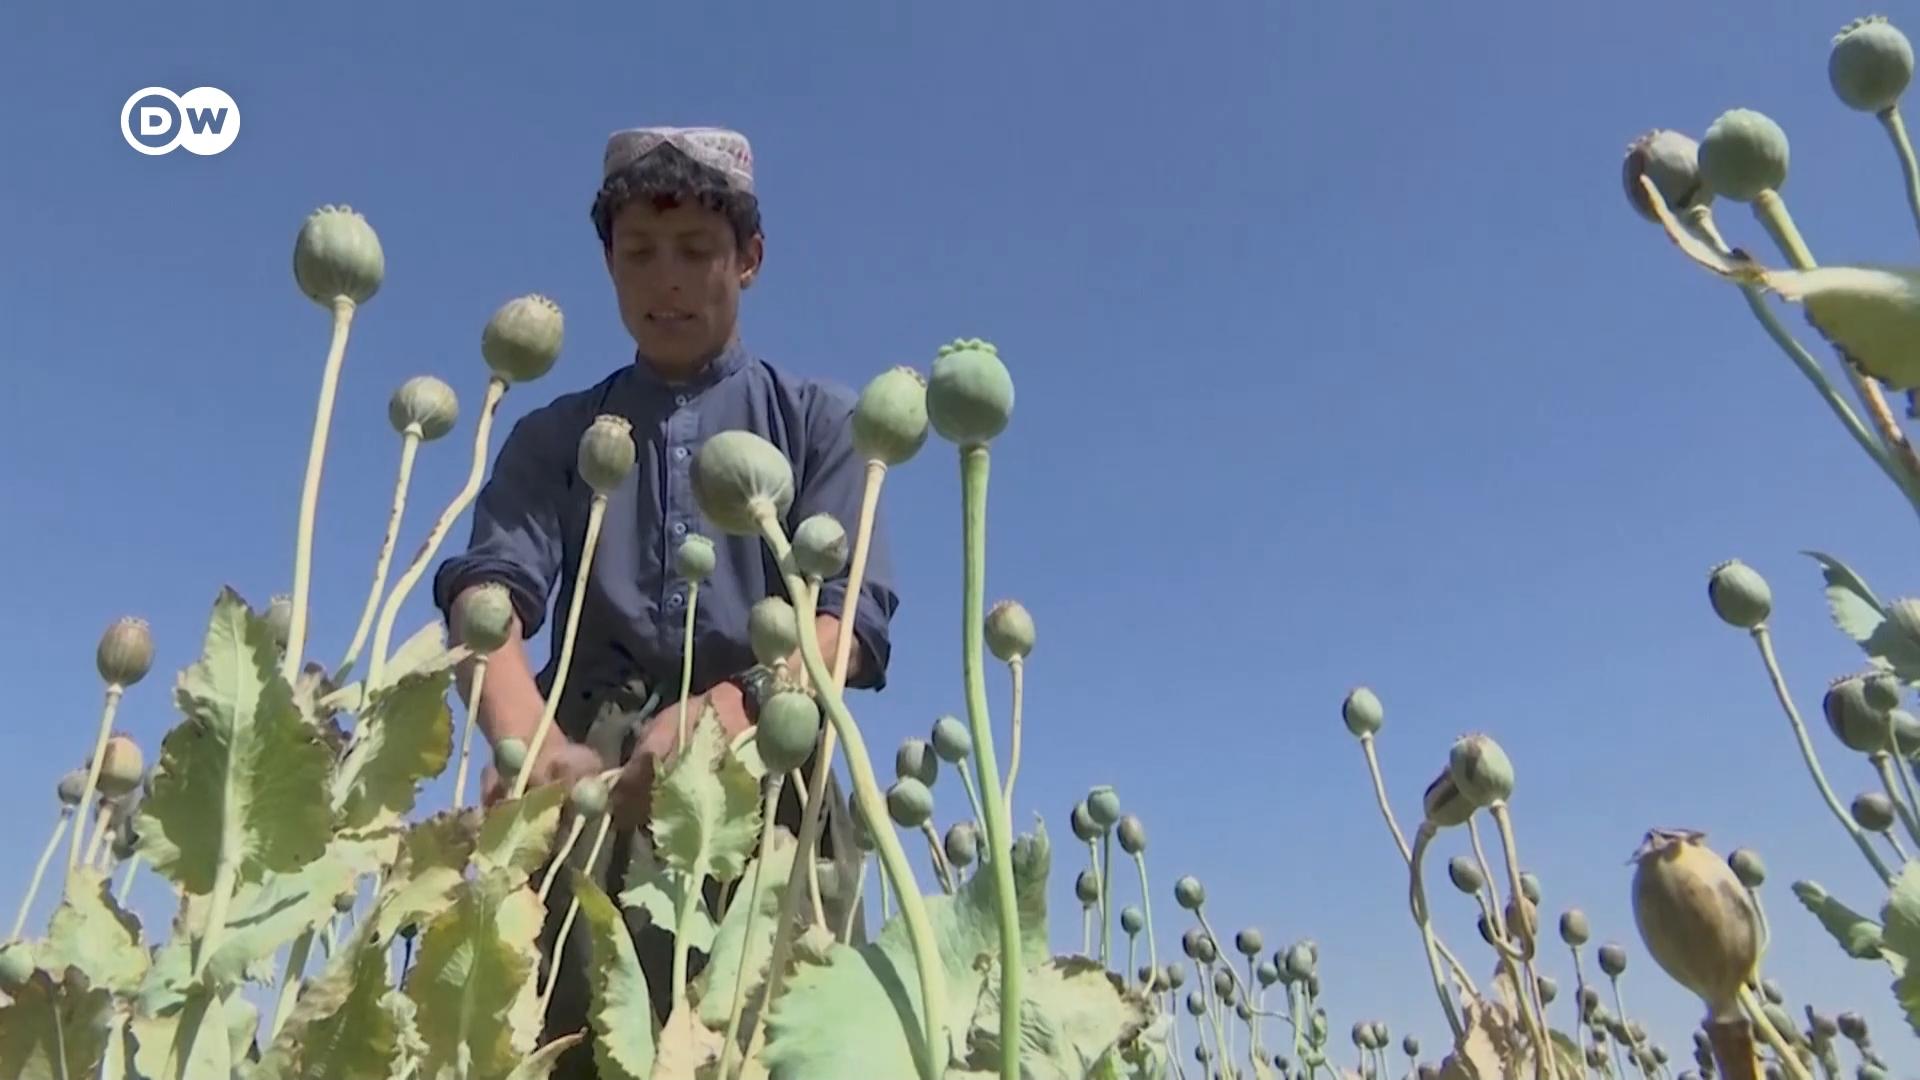 तालिबान ने अफगानिस्तान में होने वाले अफीम की खेती रोकने का फैसला लिया है, जिससे देश के किसानों पर चोट पड़ रही है.